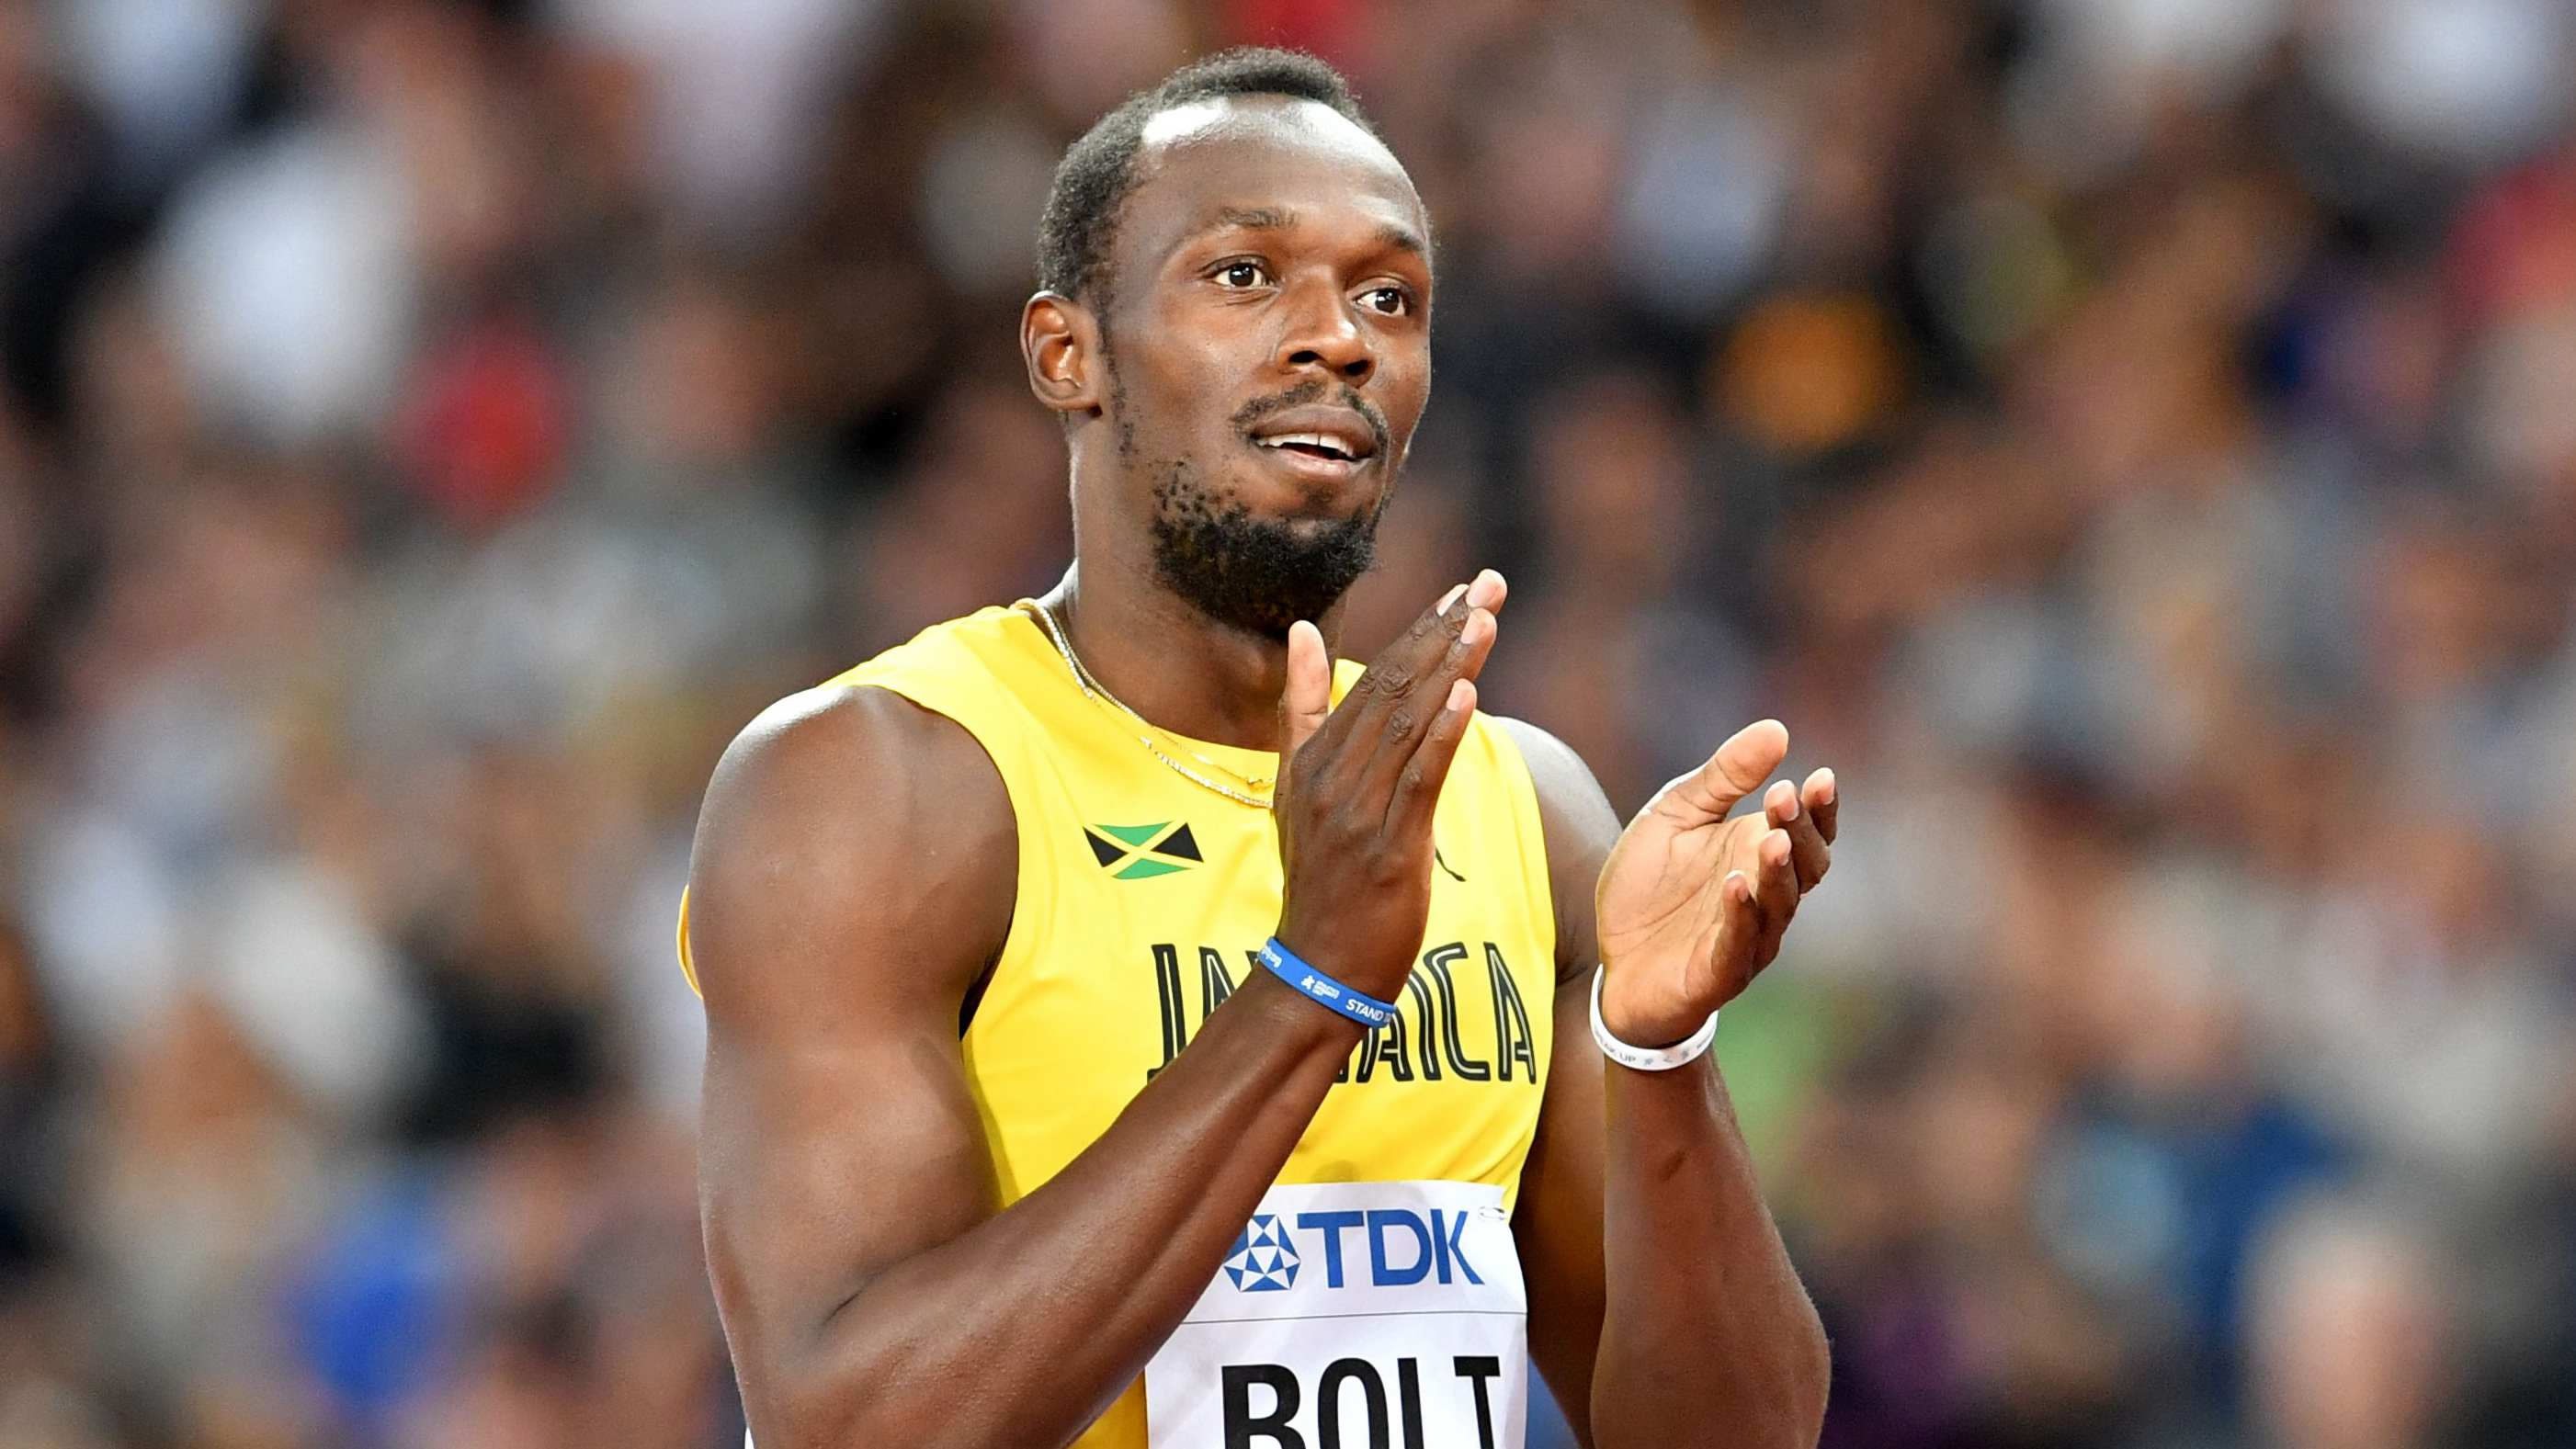 Bolt not running out of wow factor despite last defeat - CGTN